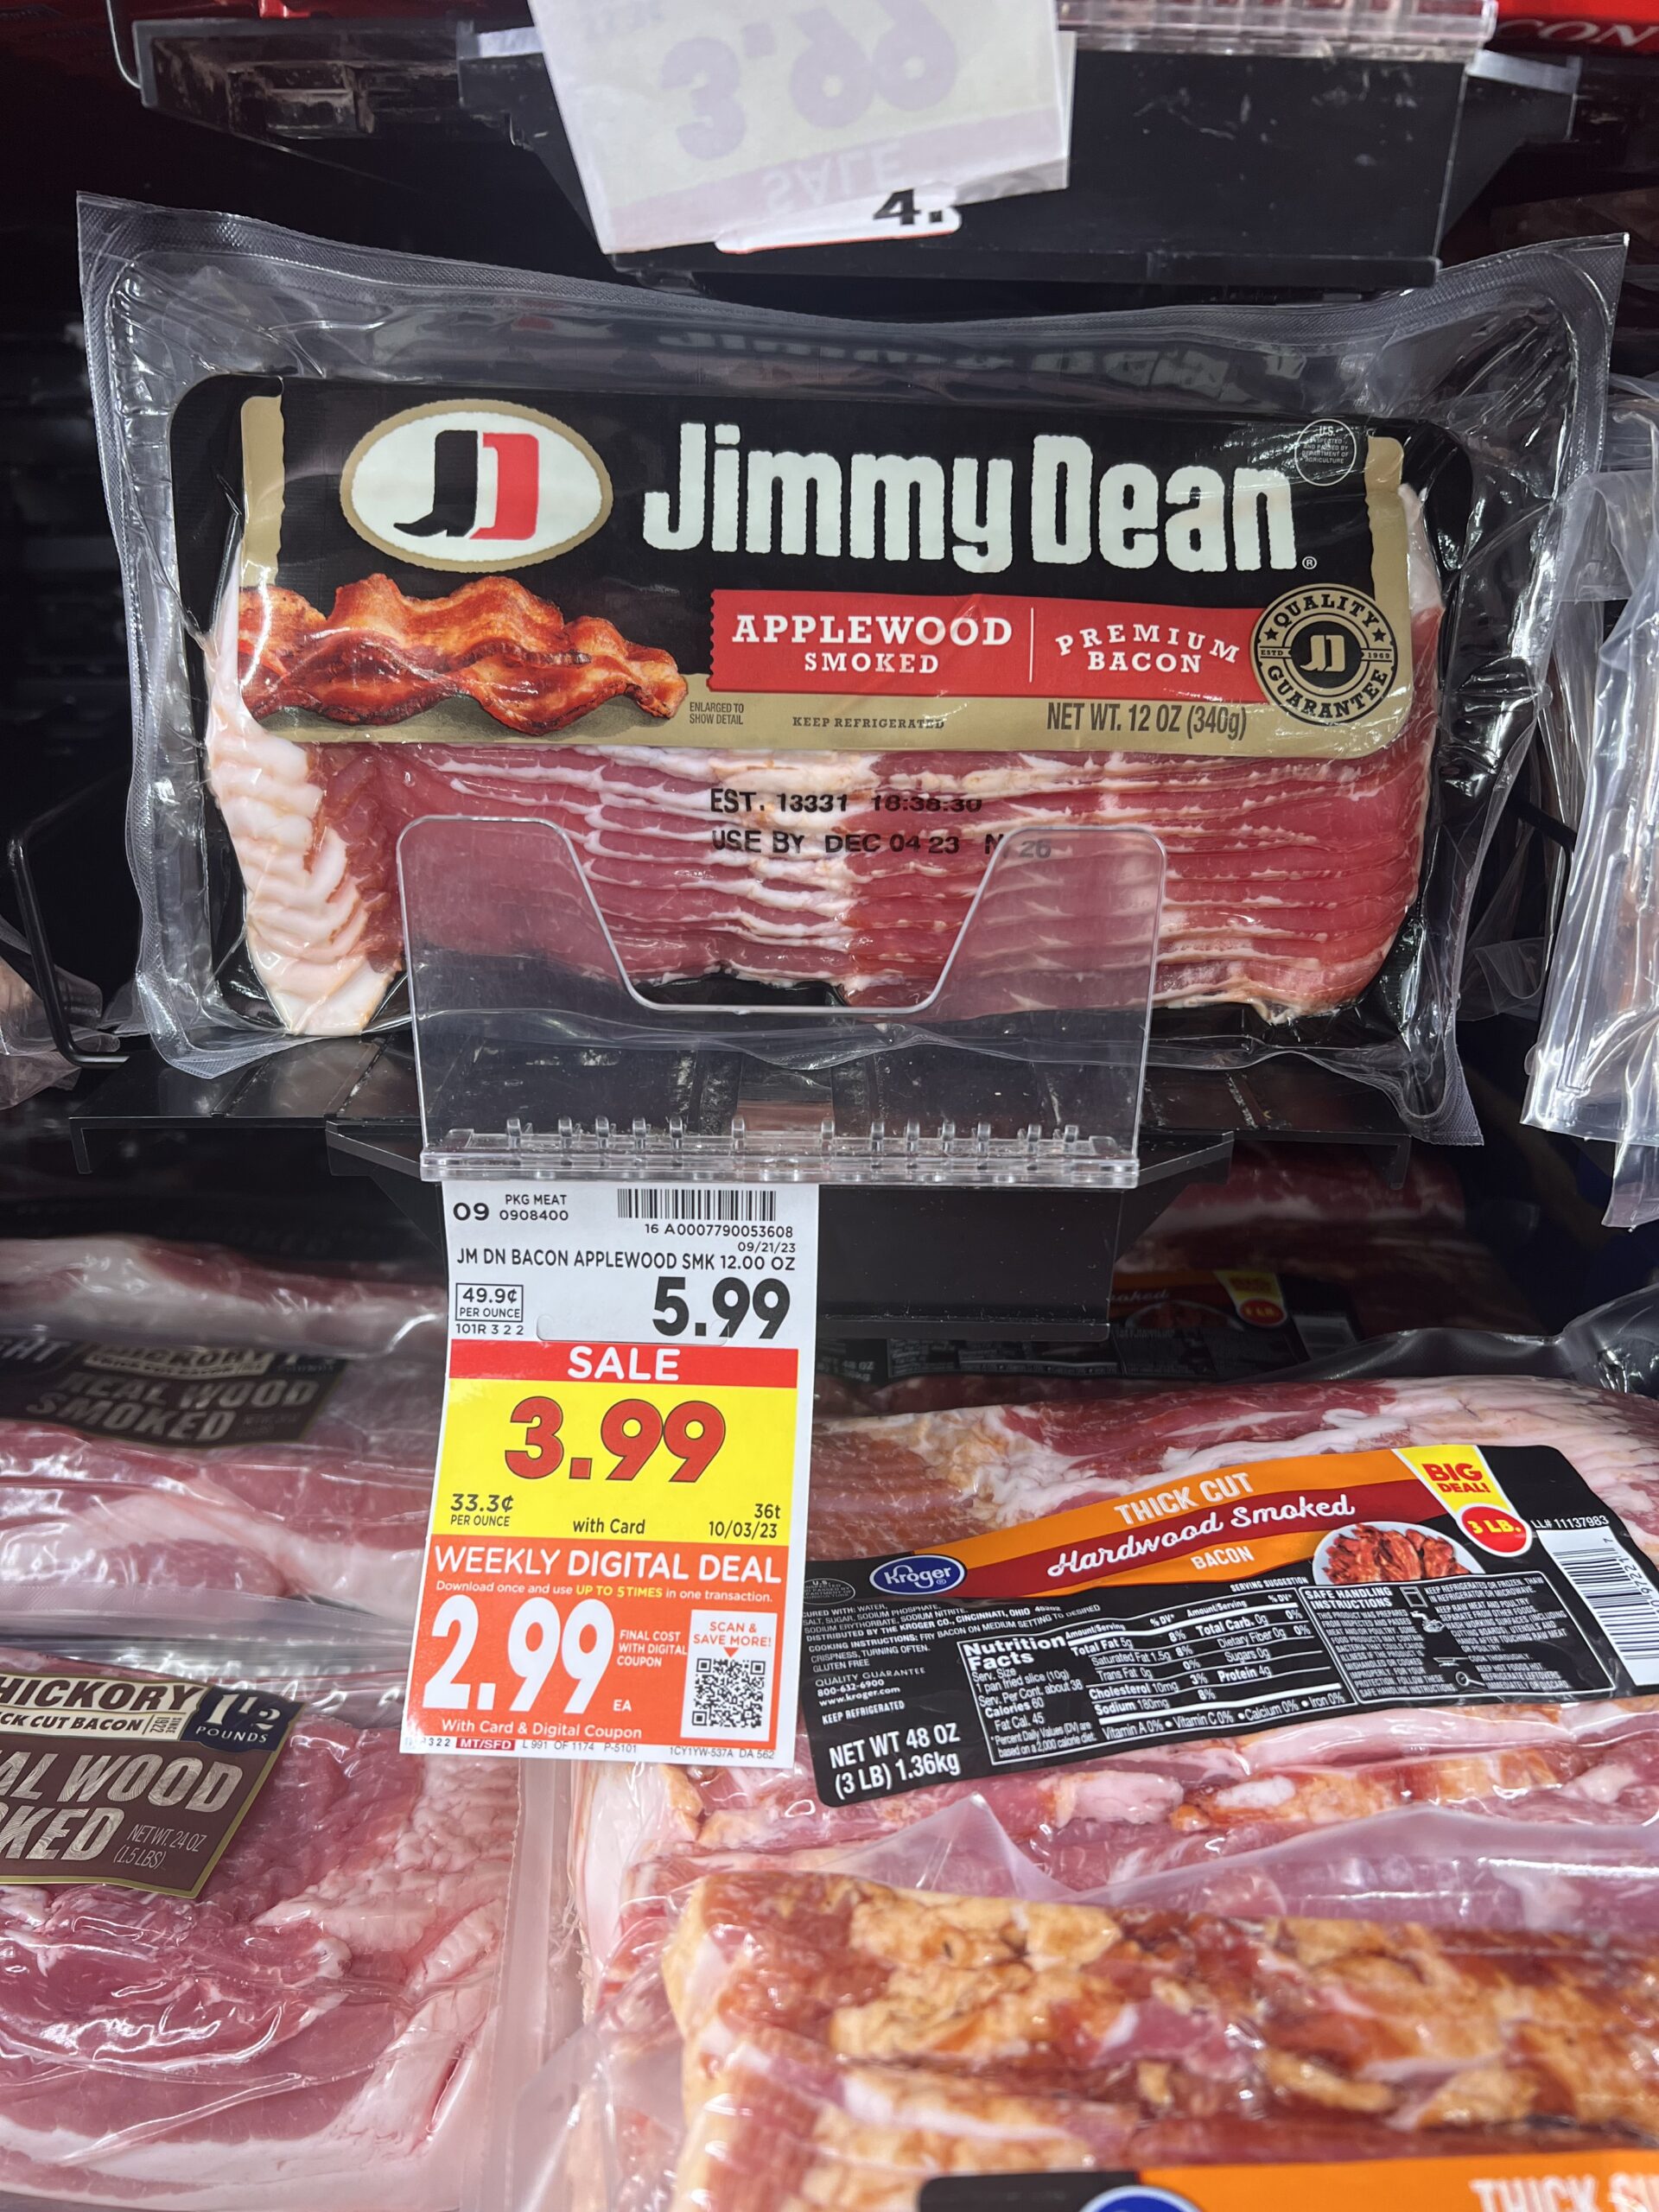 jimmy dean bacon kroger shelf image 2